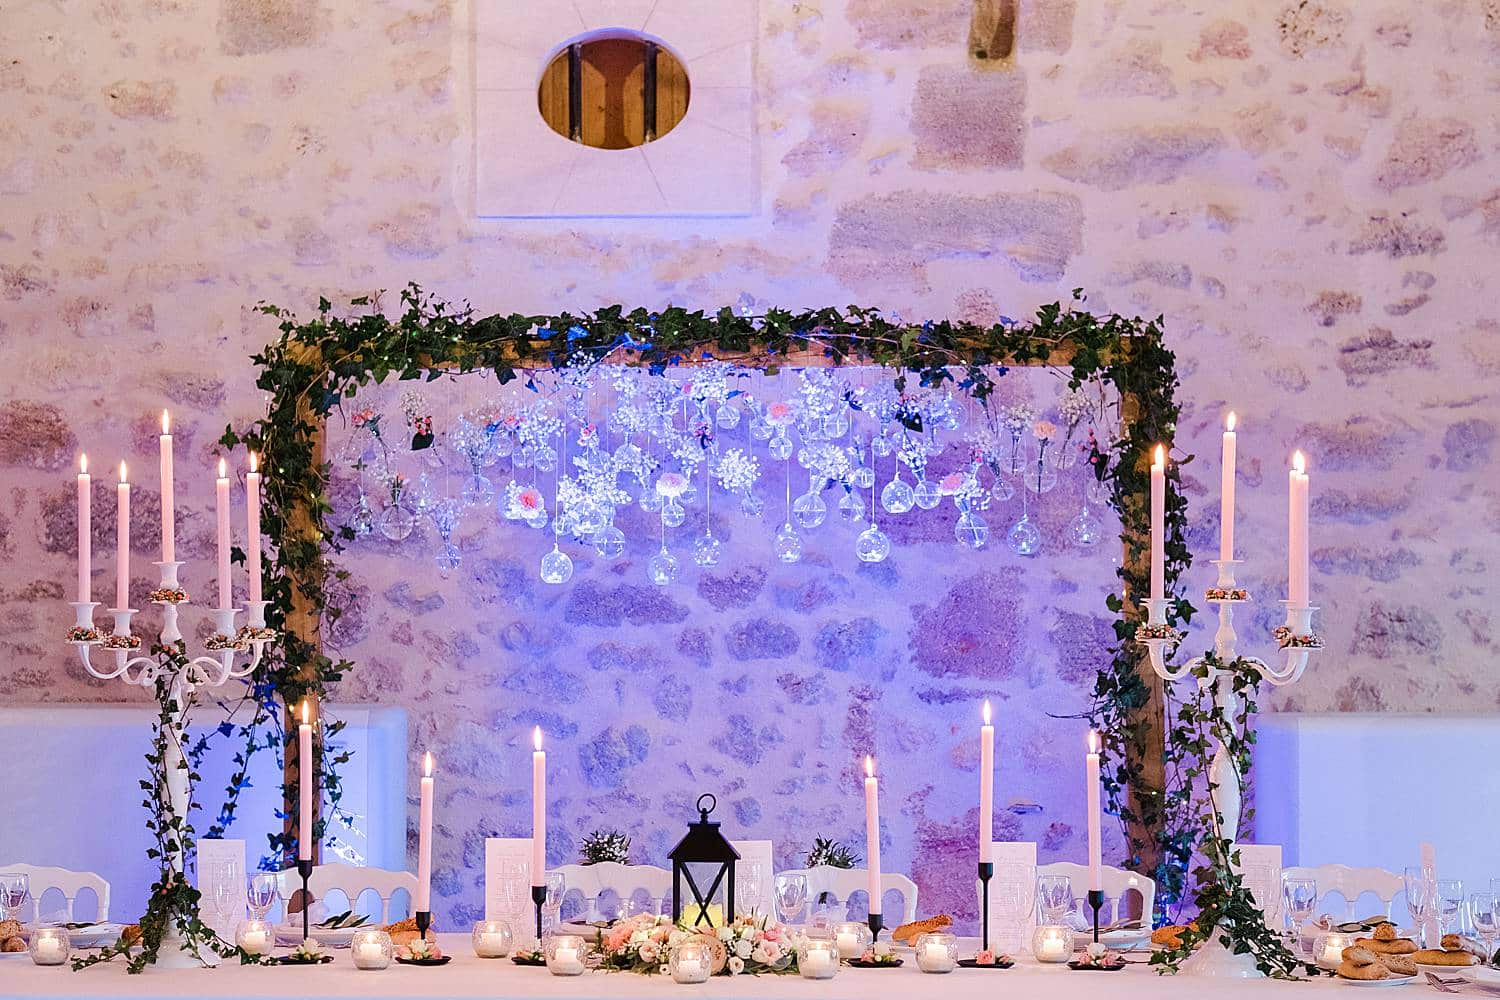 decoration au château de Flojague proche de Bordeaux en gironde par Pixaile Photography photographe de mariage professionnel